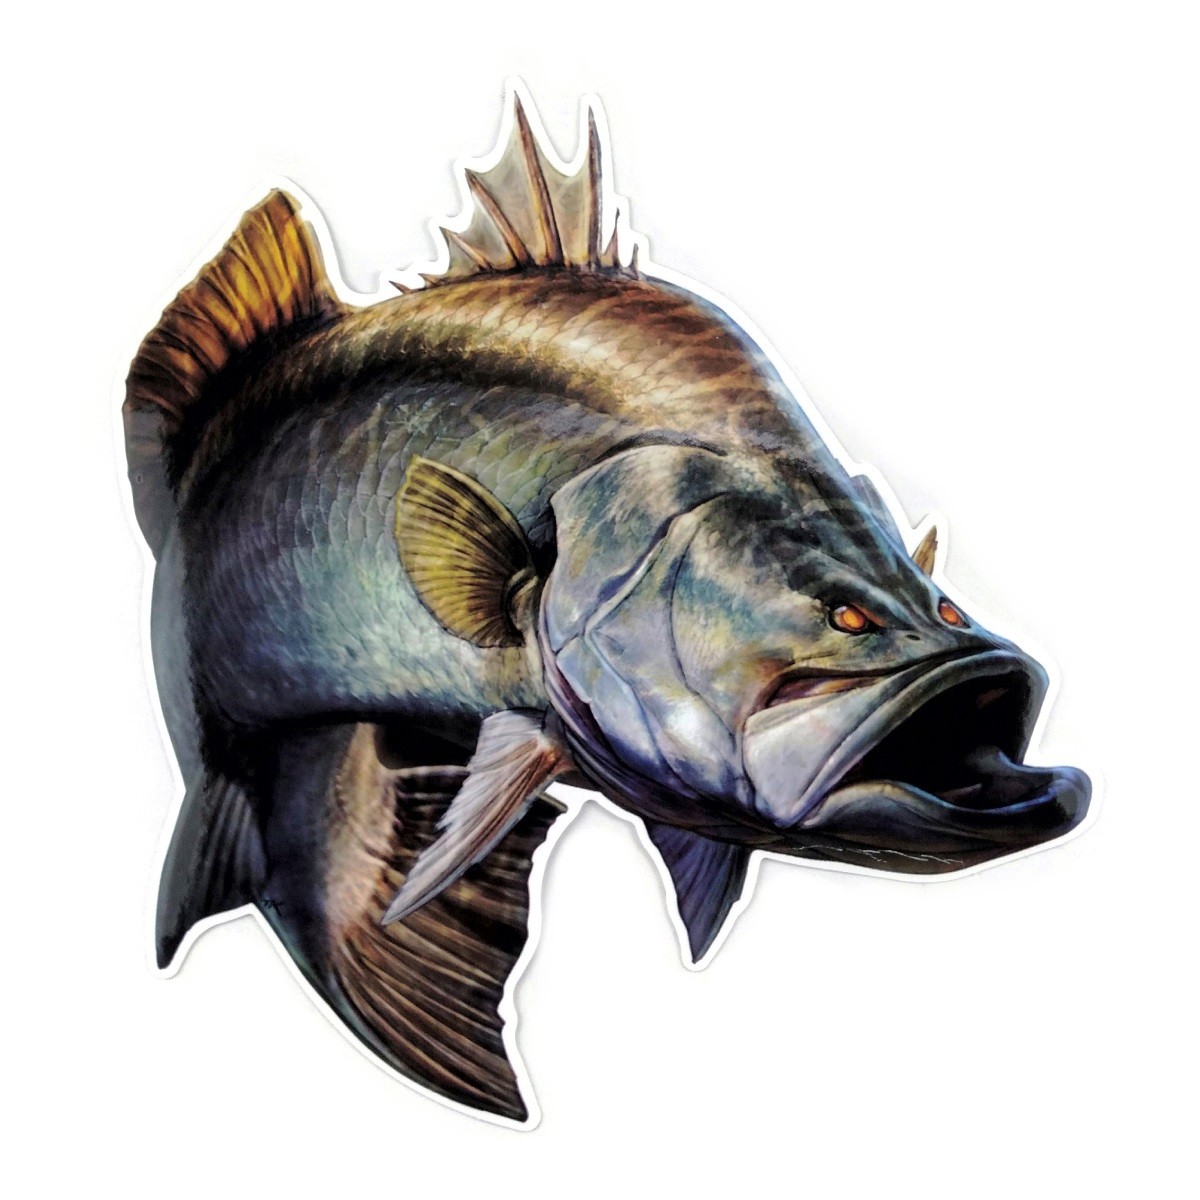 70以上 かっこいい リアル 魚 イラスト 壁紙画像トップ無料